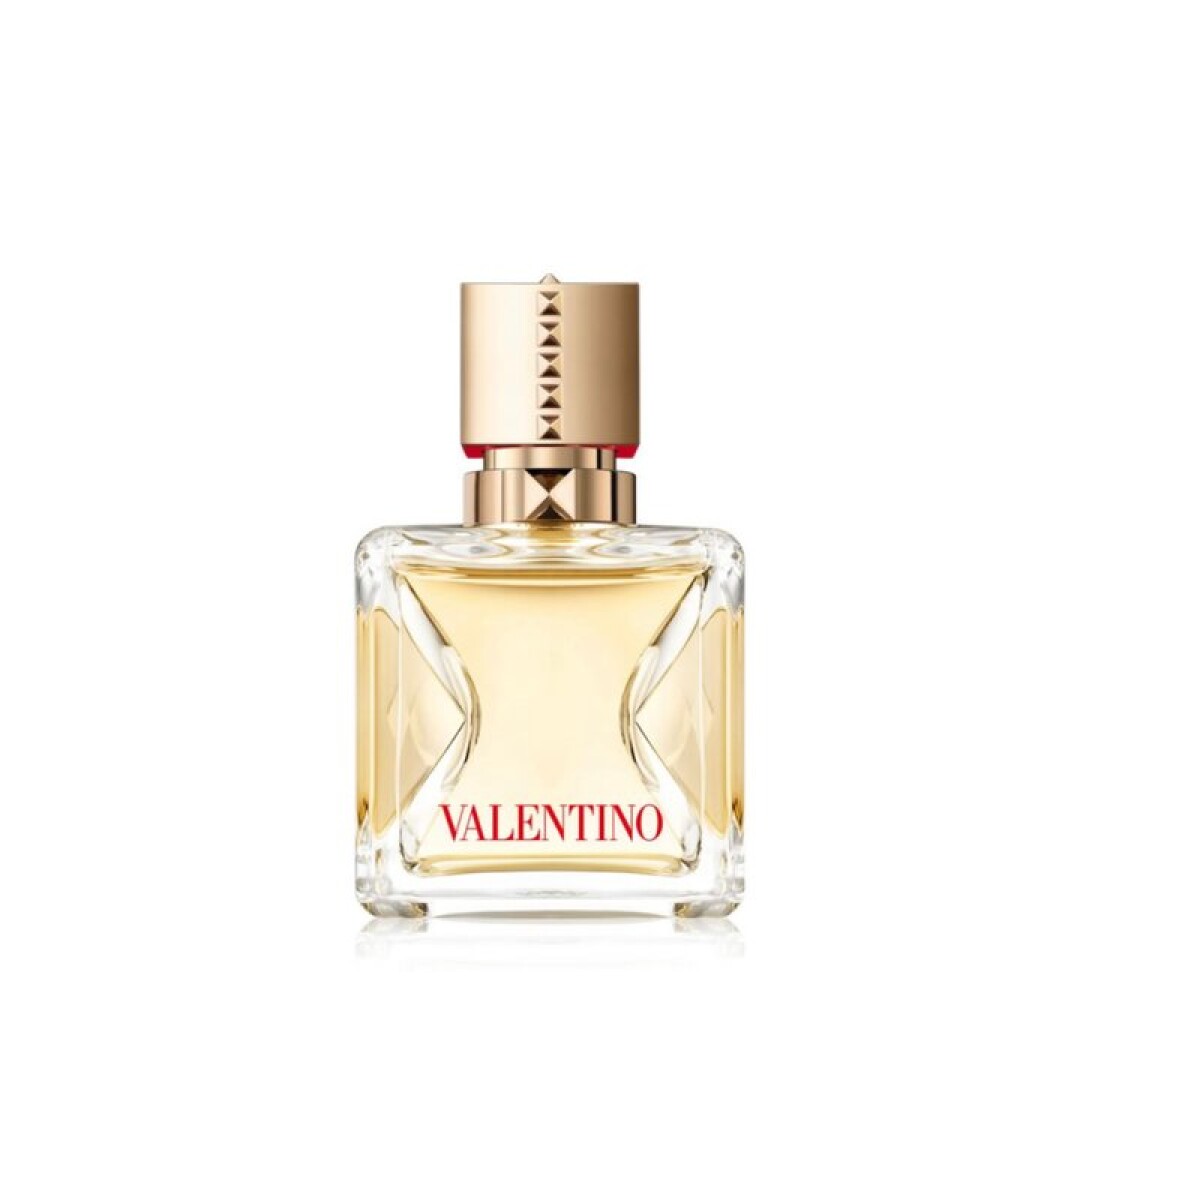 Perfume Valentino Voce Viva Edp 30 Ml Edición Limitada - 001 